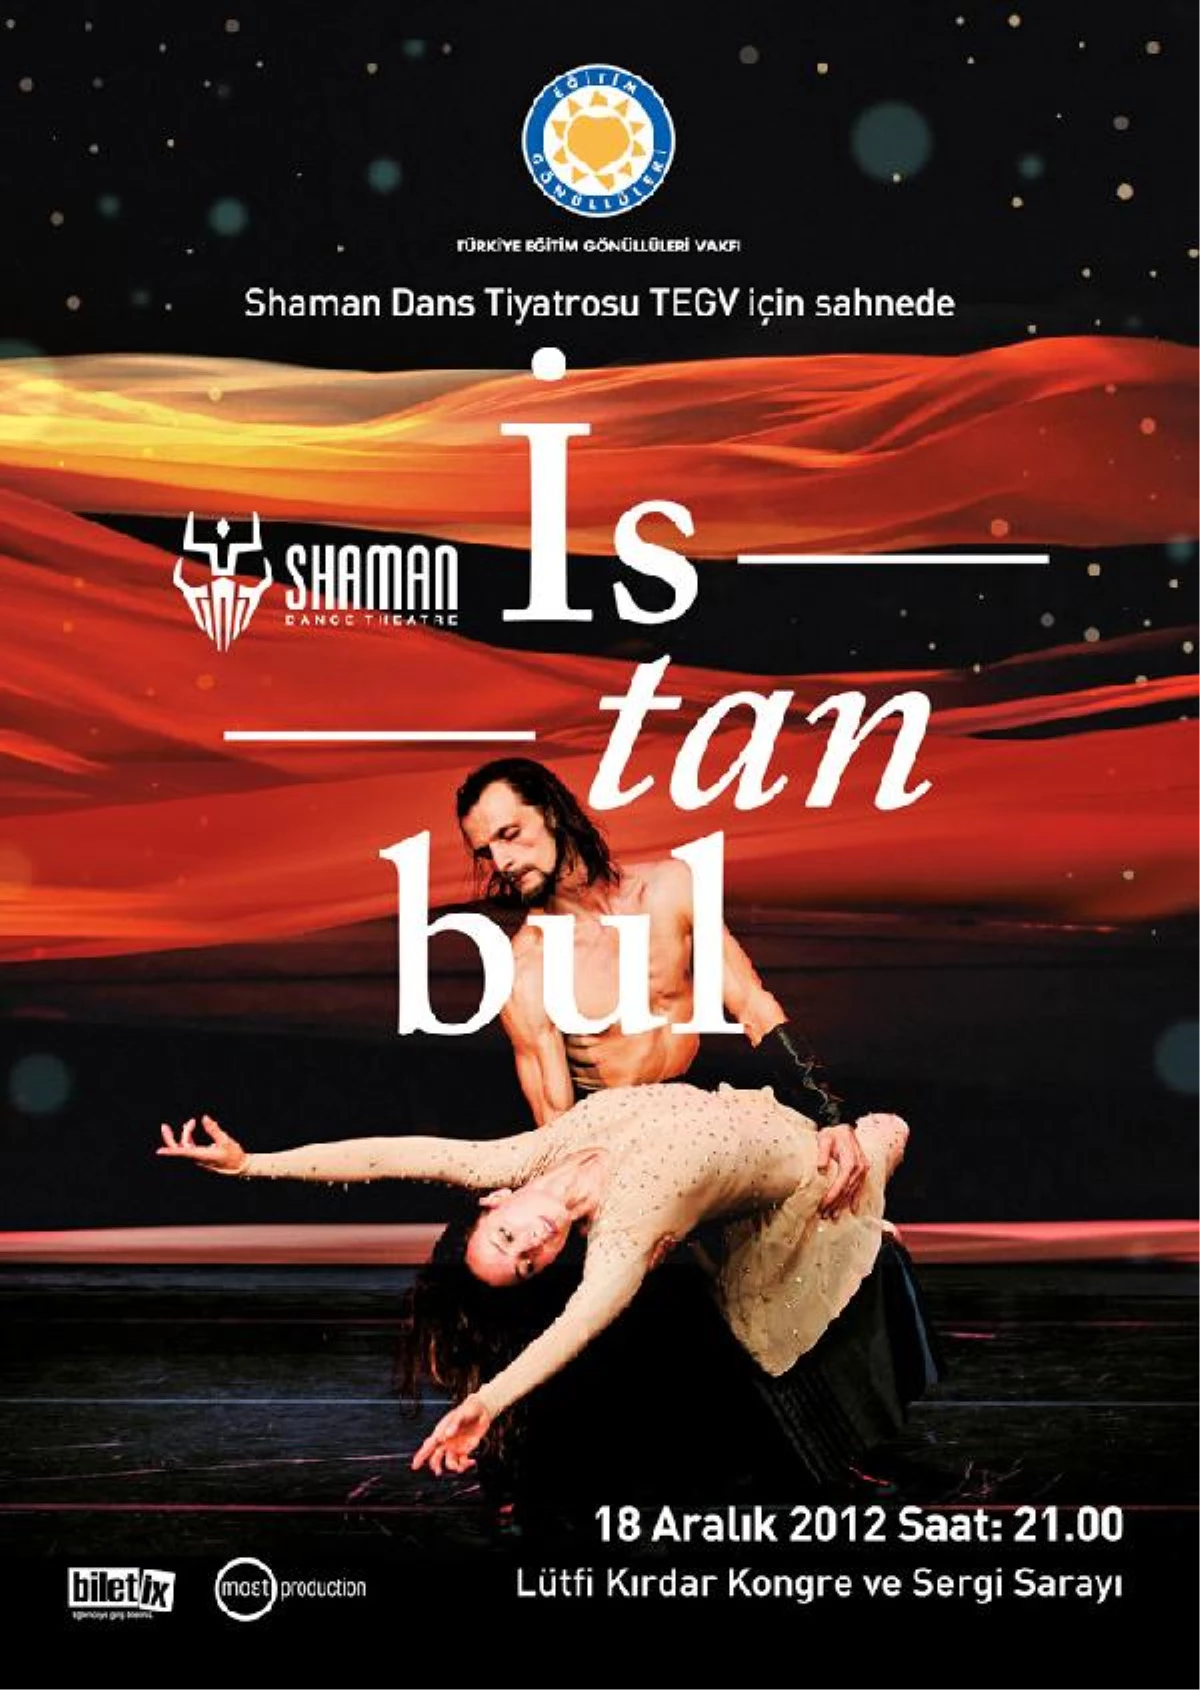 Shaman Dans Tiyatrosu Tegv İçin Sahnede